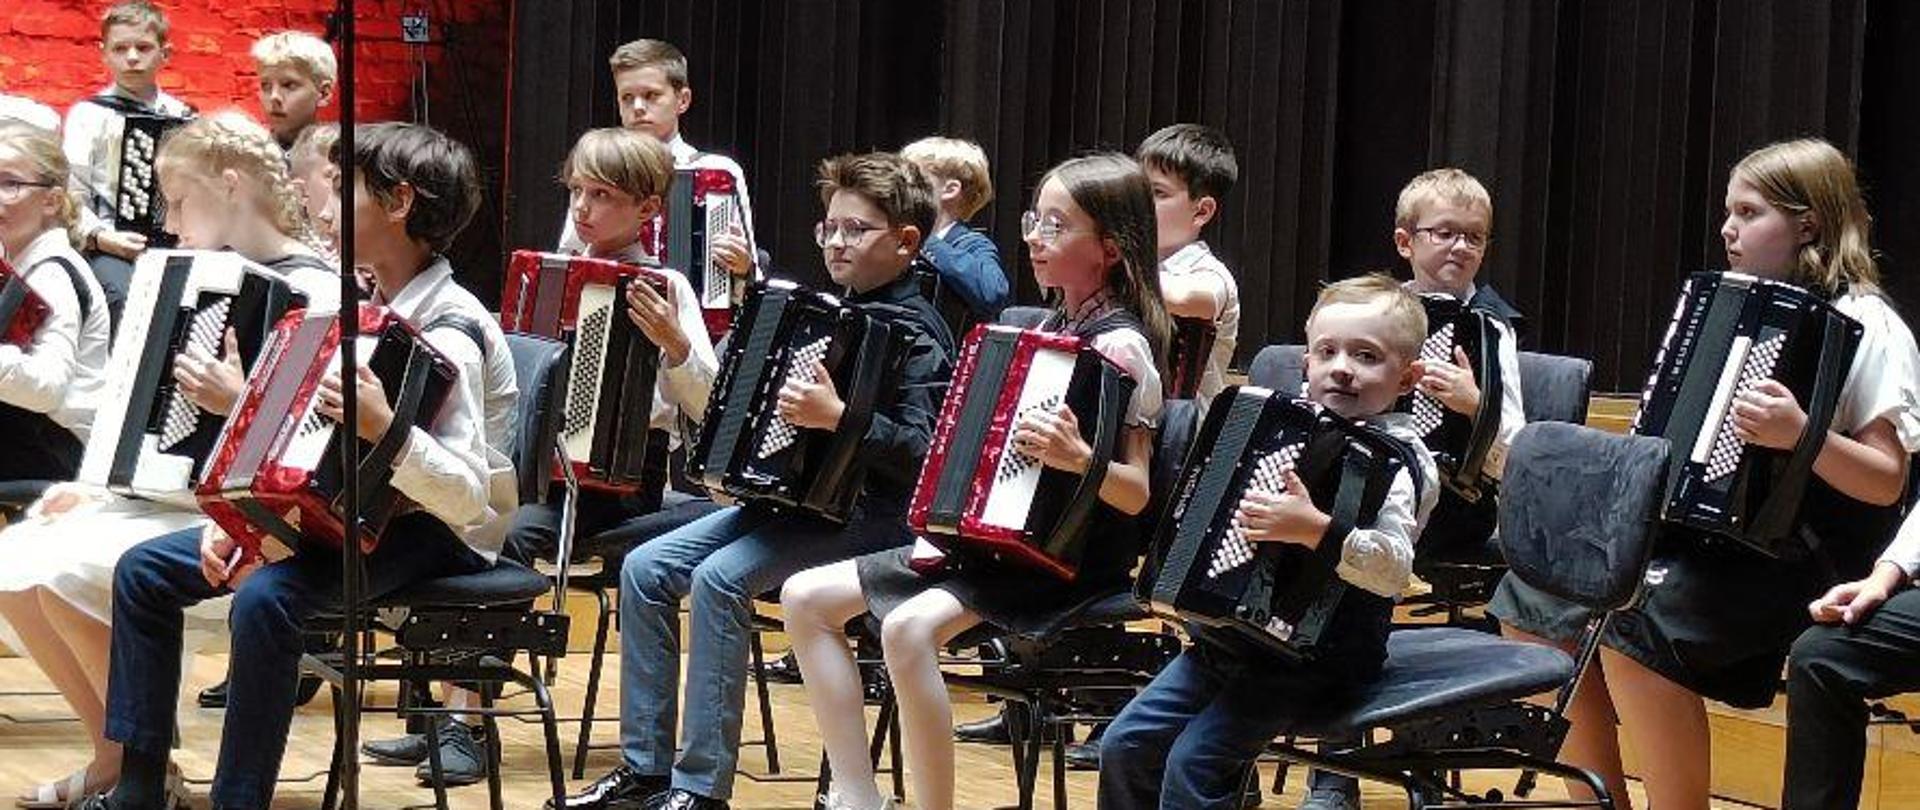 Uczniowie trzymający akordeony, siedzący na scenie Filharmonii. Na dole fotografii widoczna publiczność.